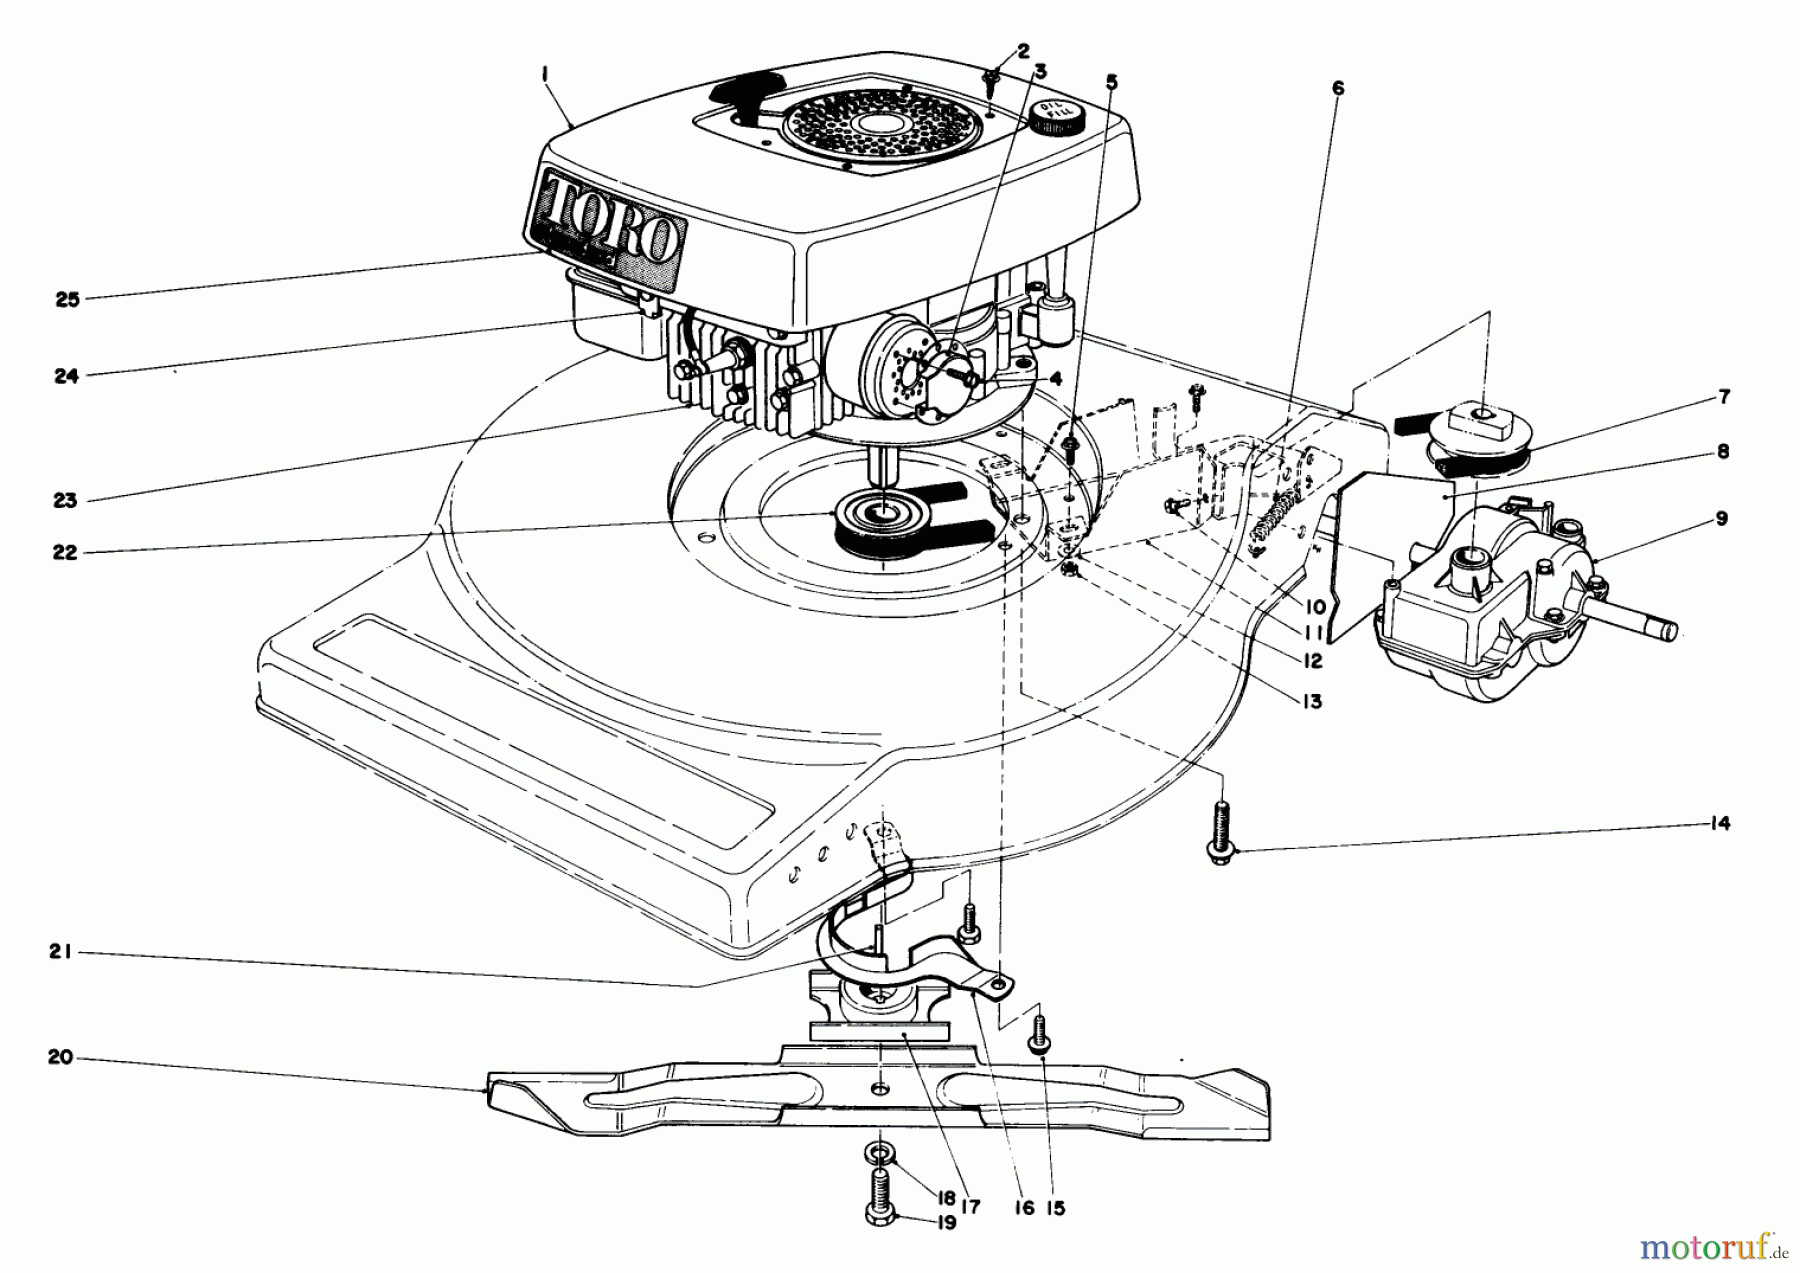  Toro Neu Mowers, Walk-Behind Seite 1 16880 - Toro Lawnmower, 1982 (2000001-2999999) ENGINE ASSEMBLY (MODEL NO. 16890)